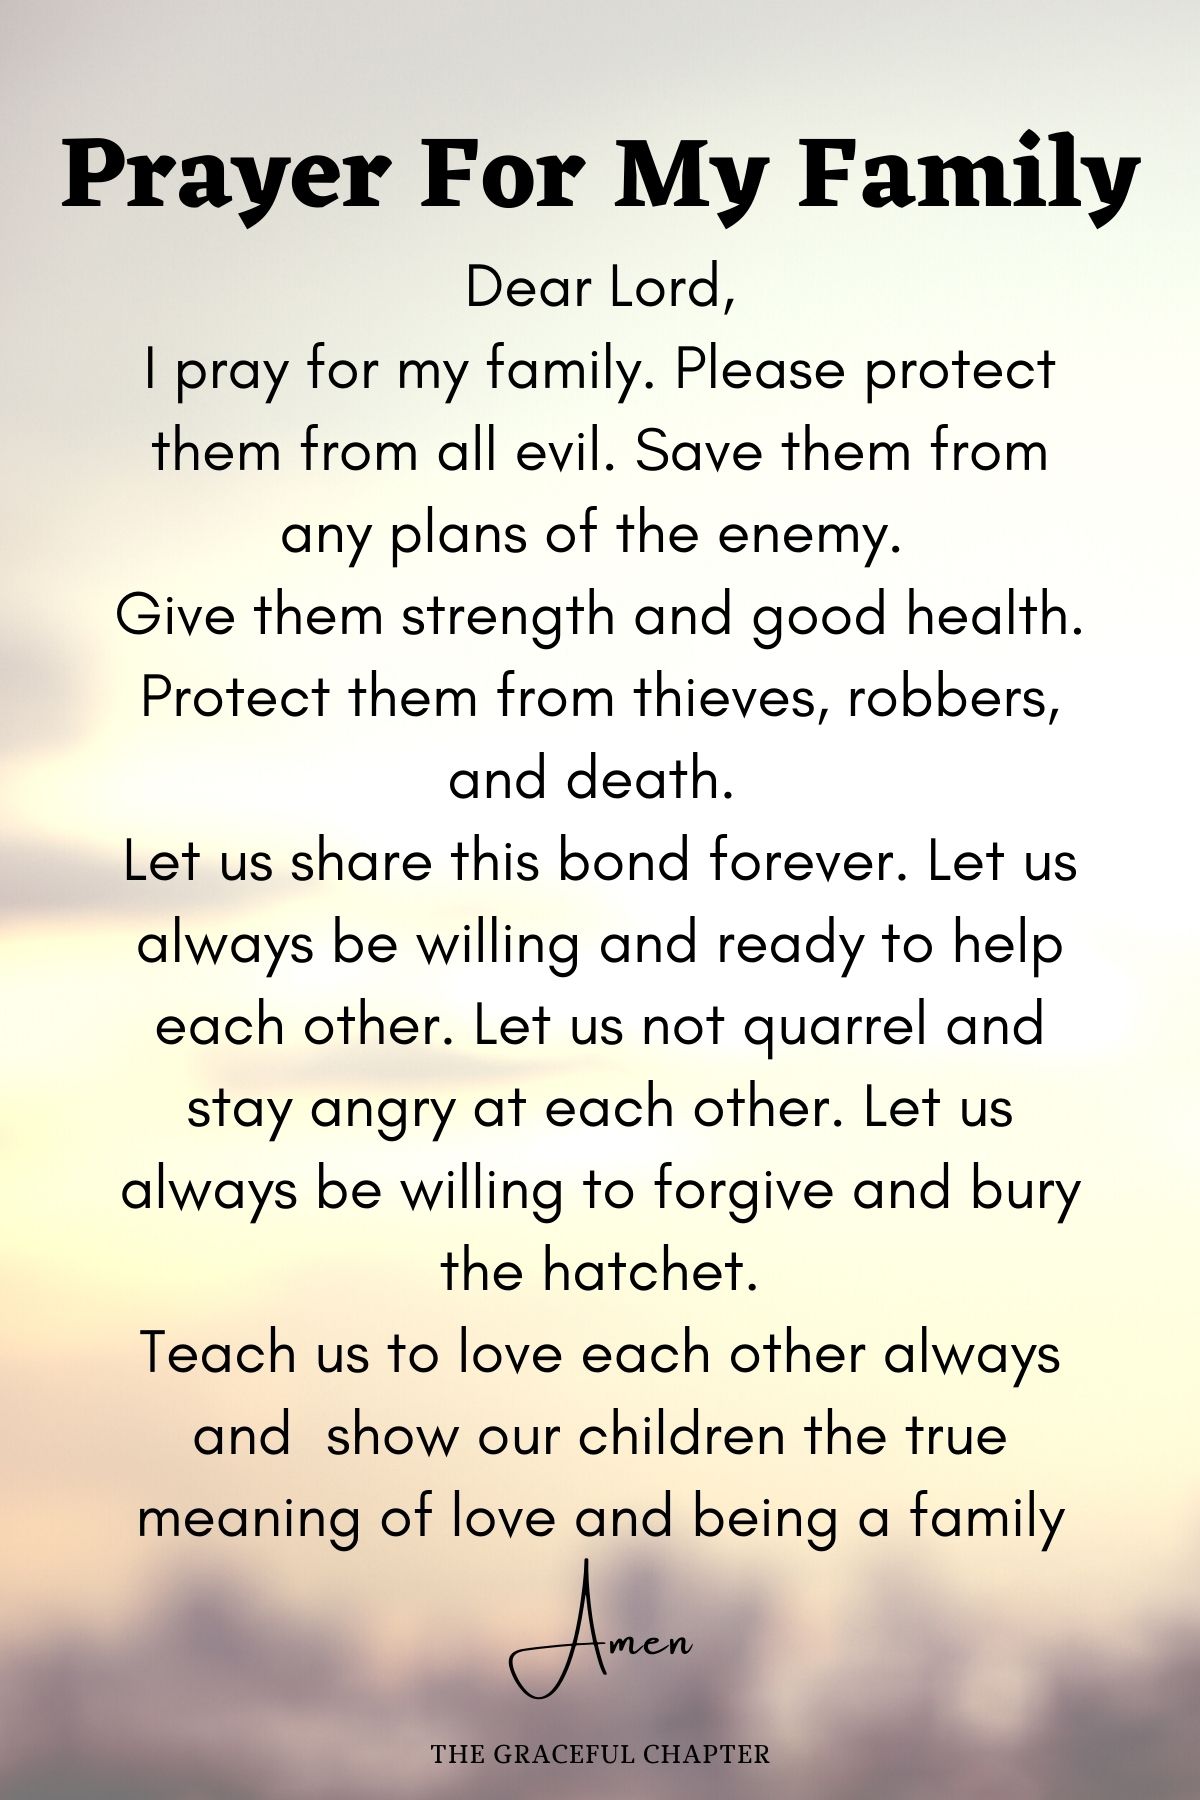 Prayer for my family